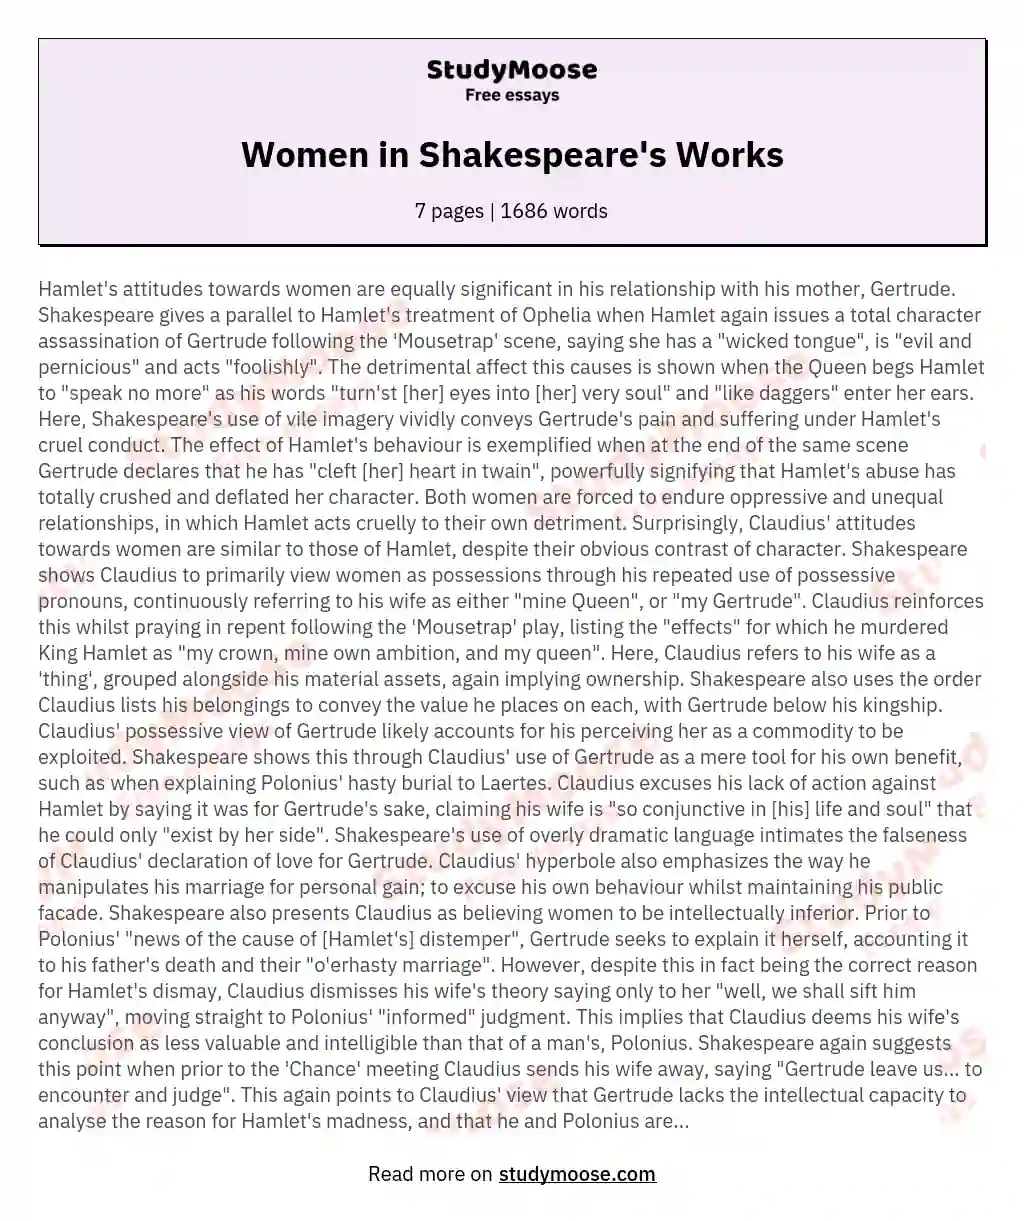 Women in Shakespeare's Works essay